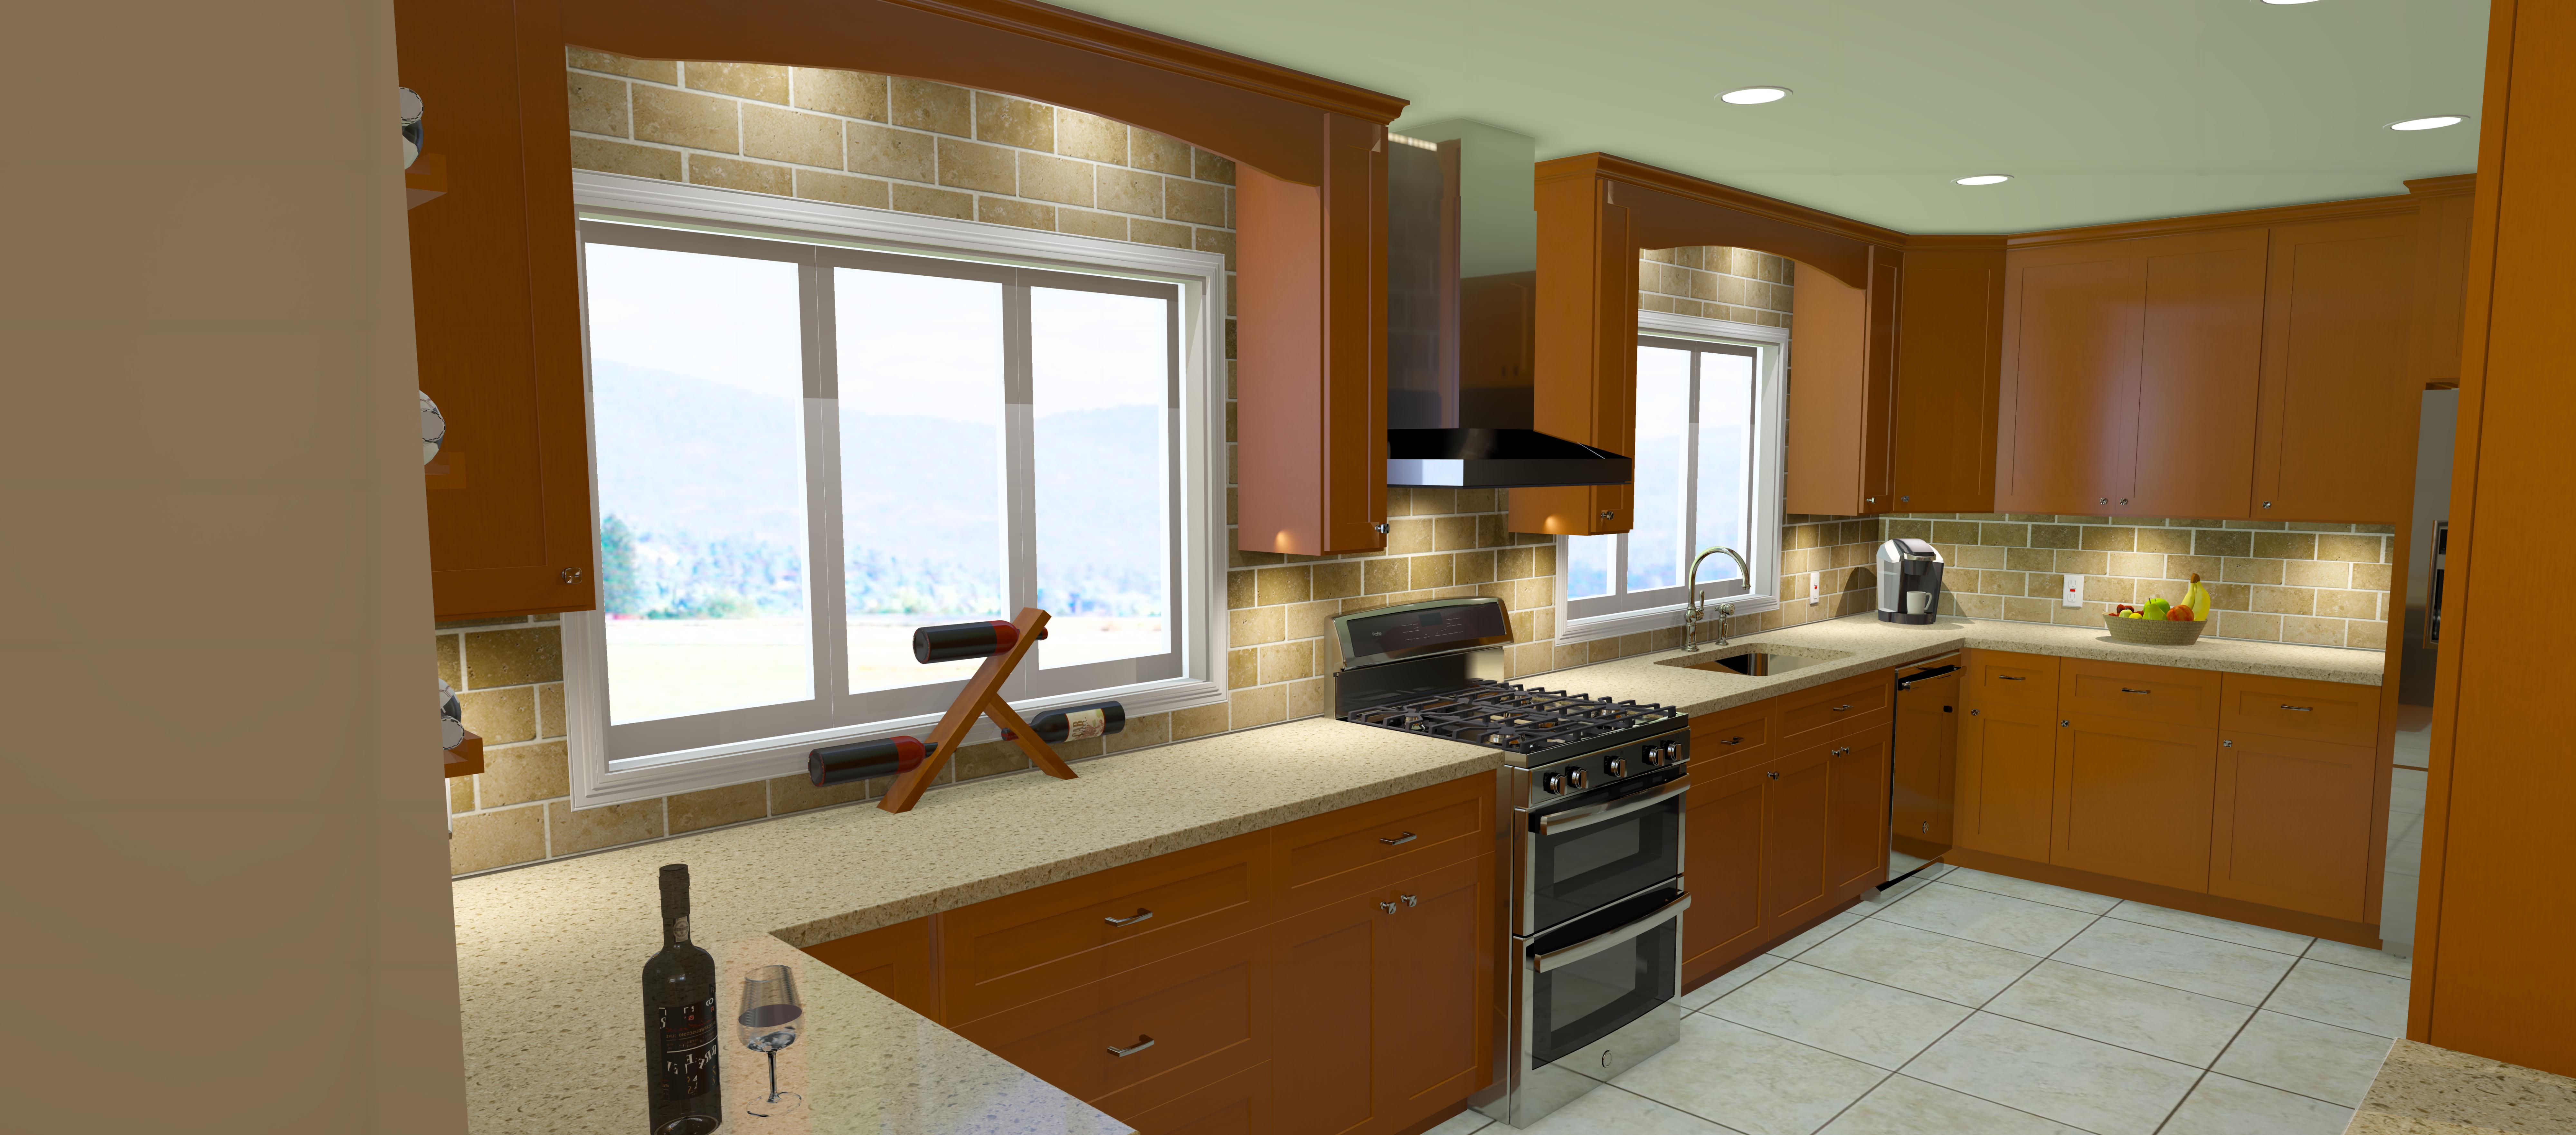 design your own virtual kitchen free